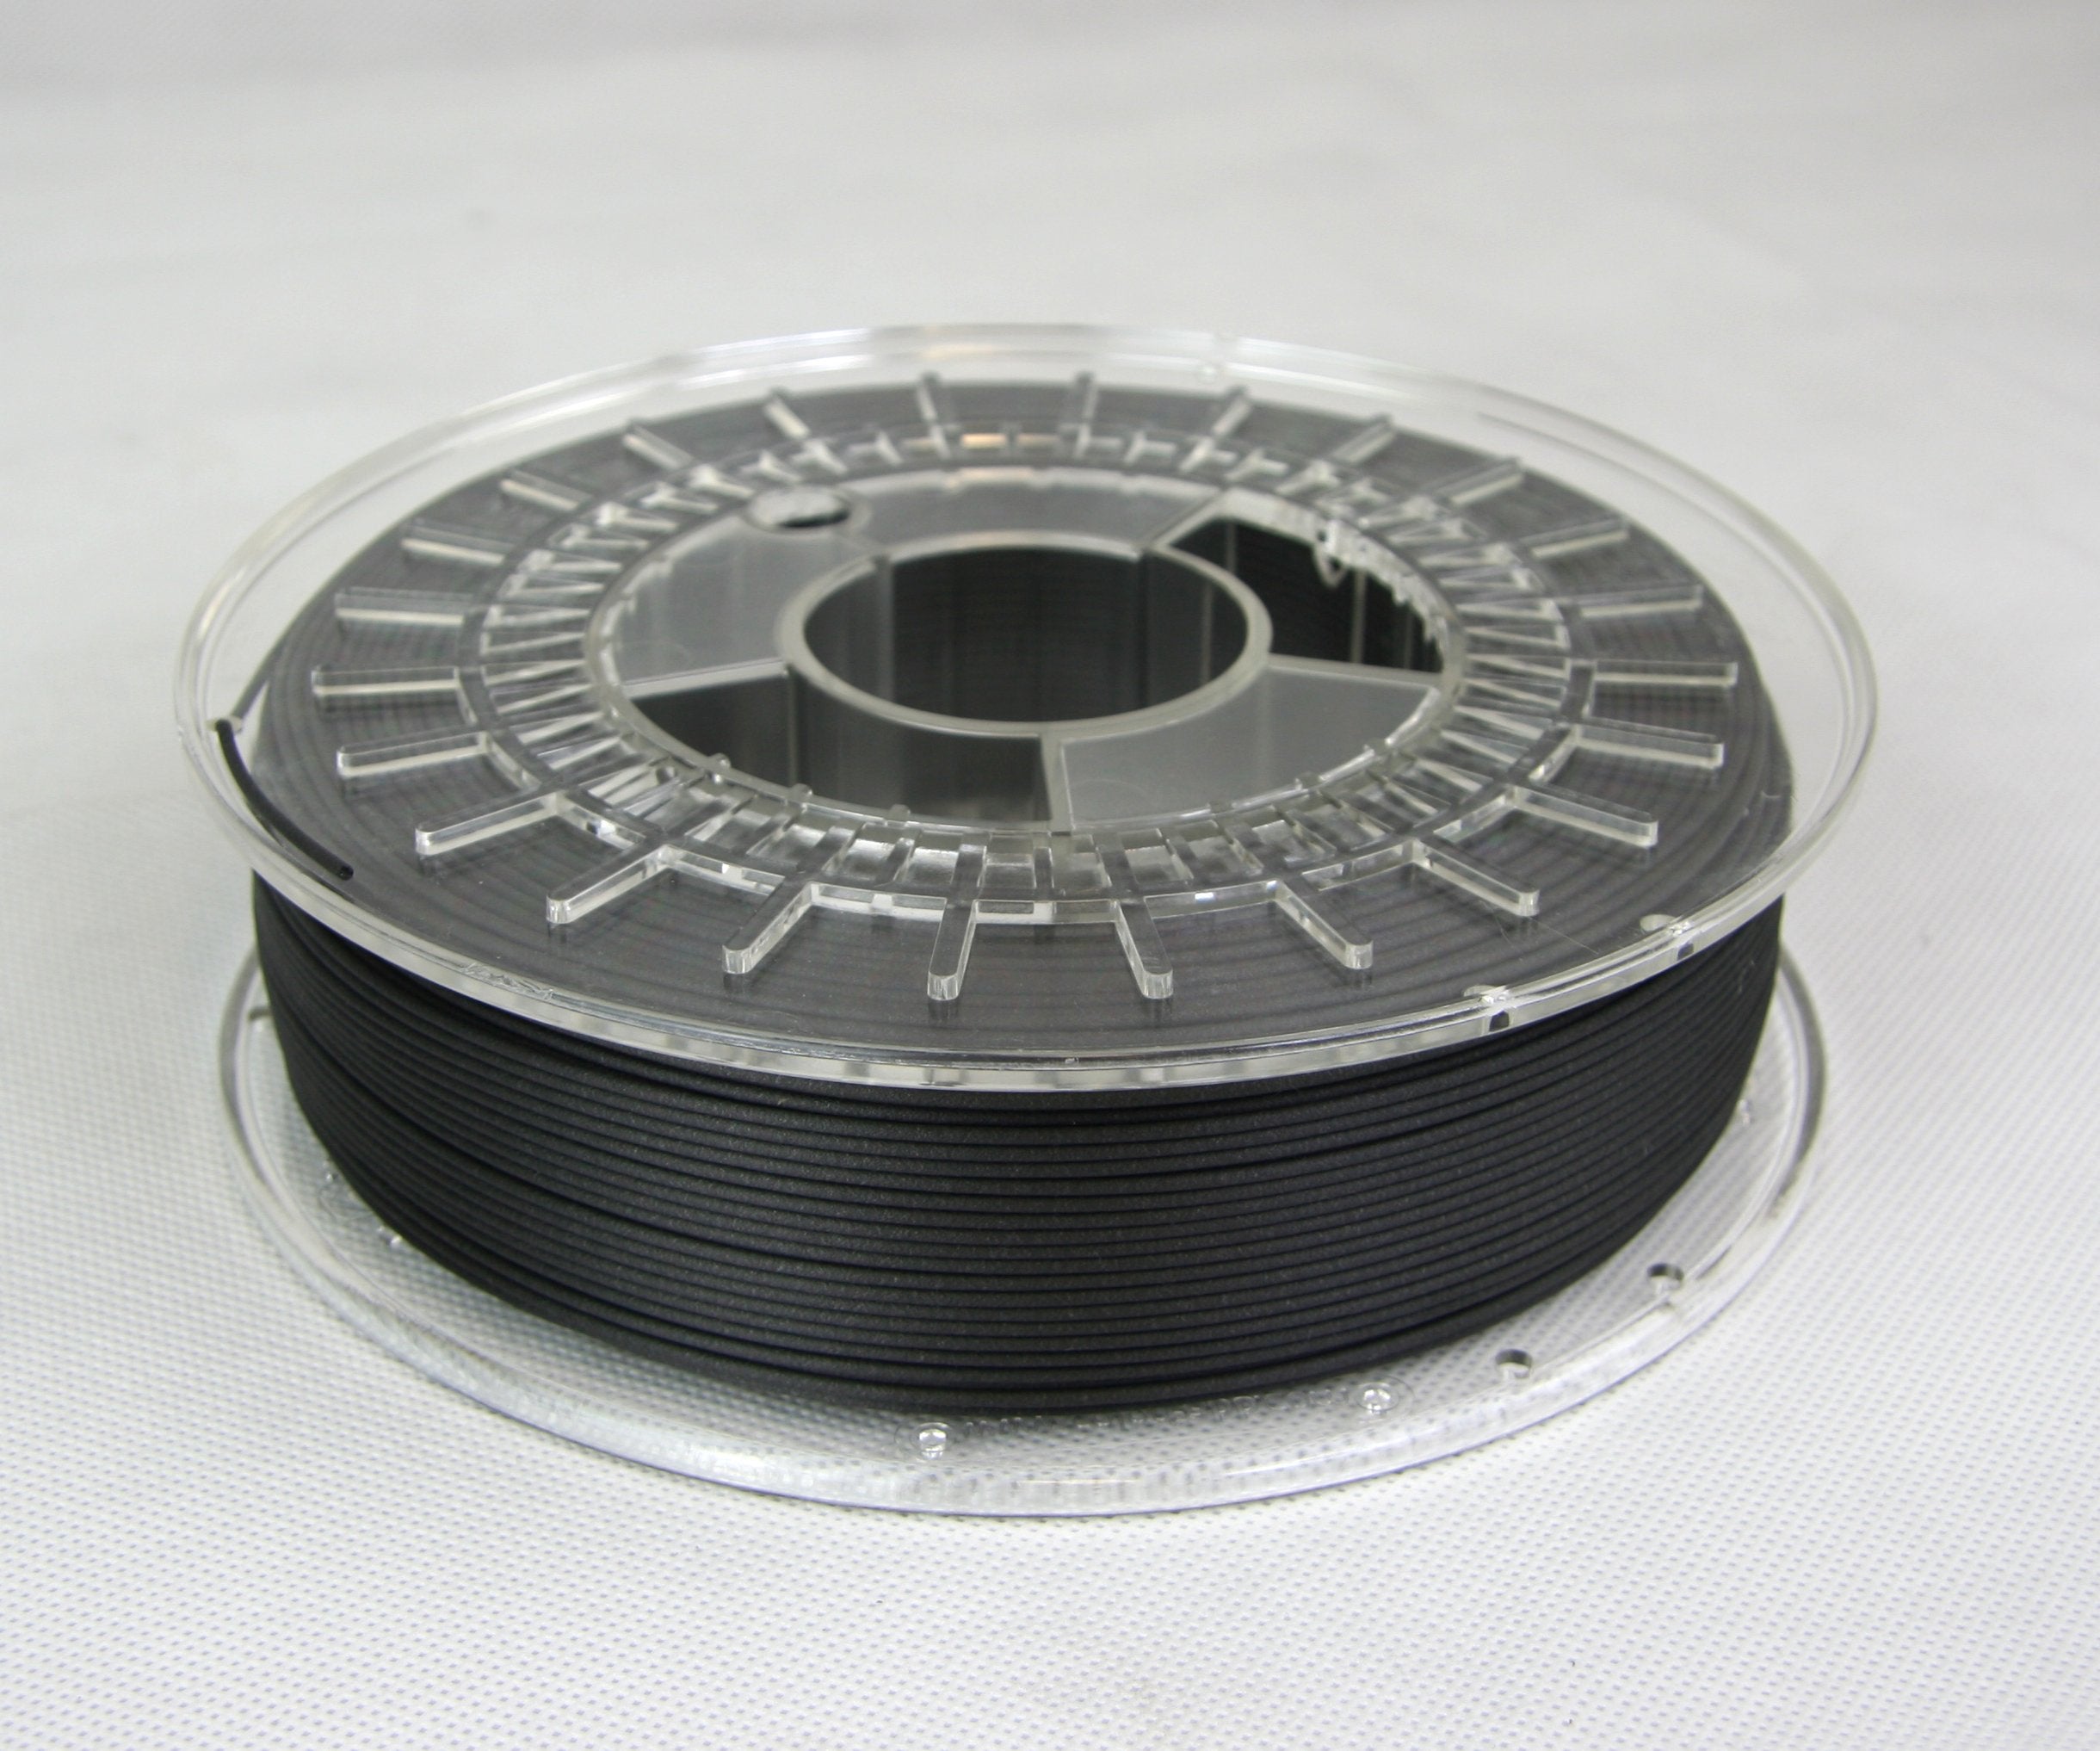 CF-PETG Filament - 1.75mm